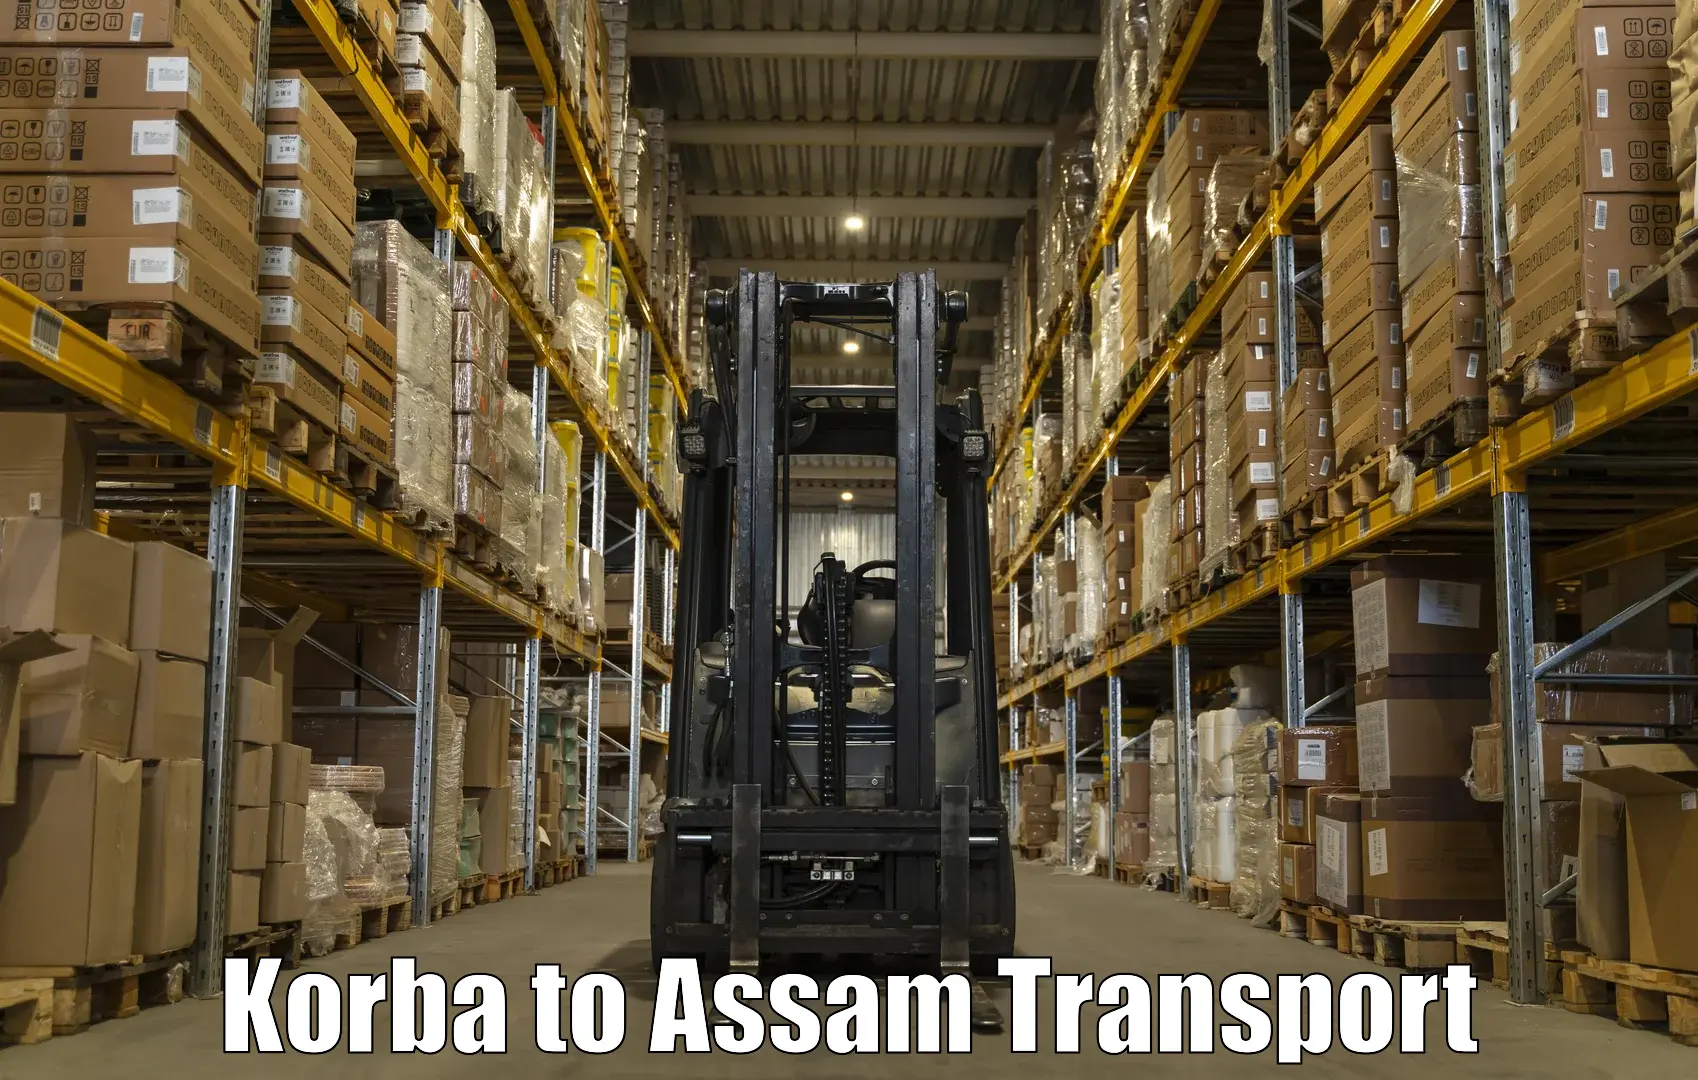 Transport in sharing Korba to Jagiroad